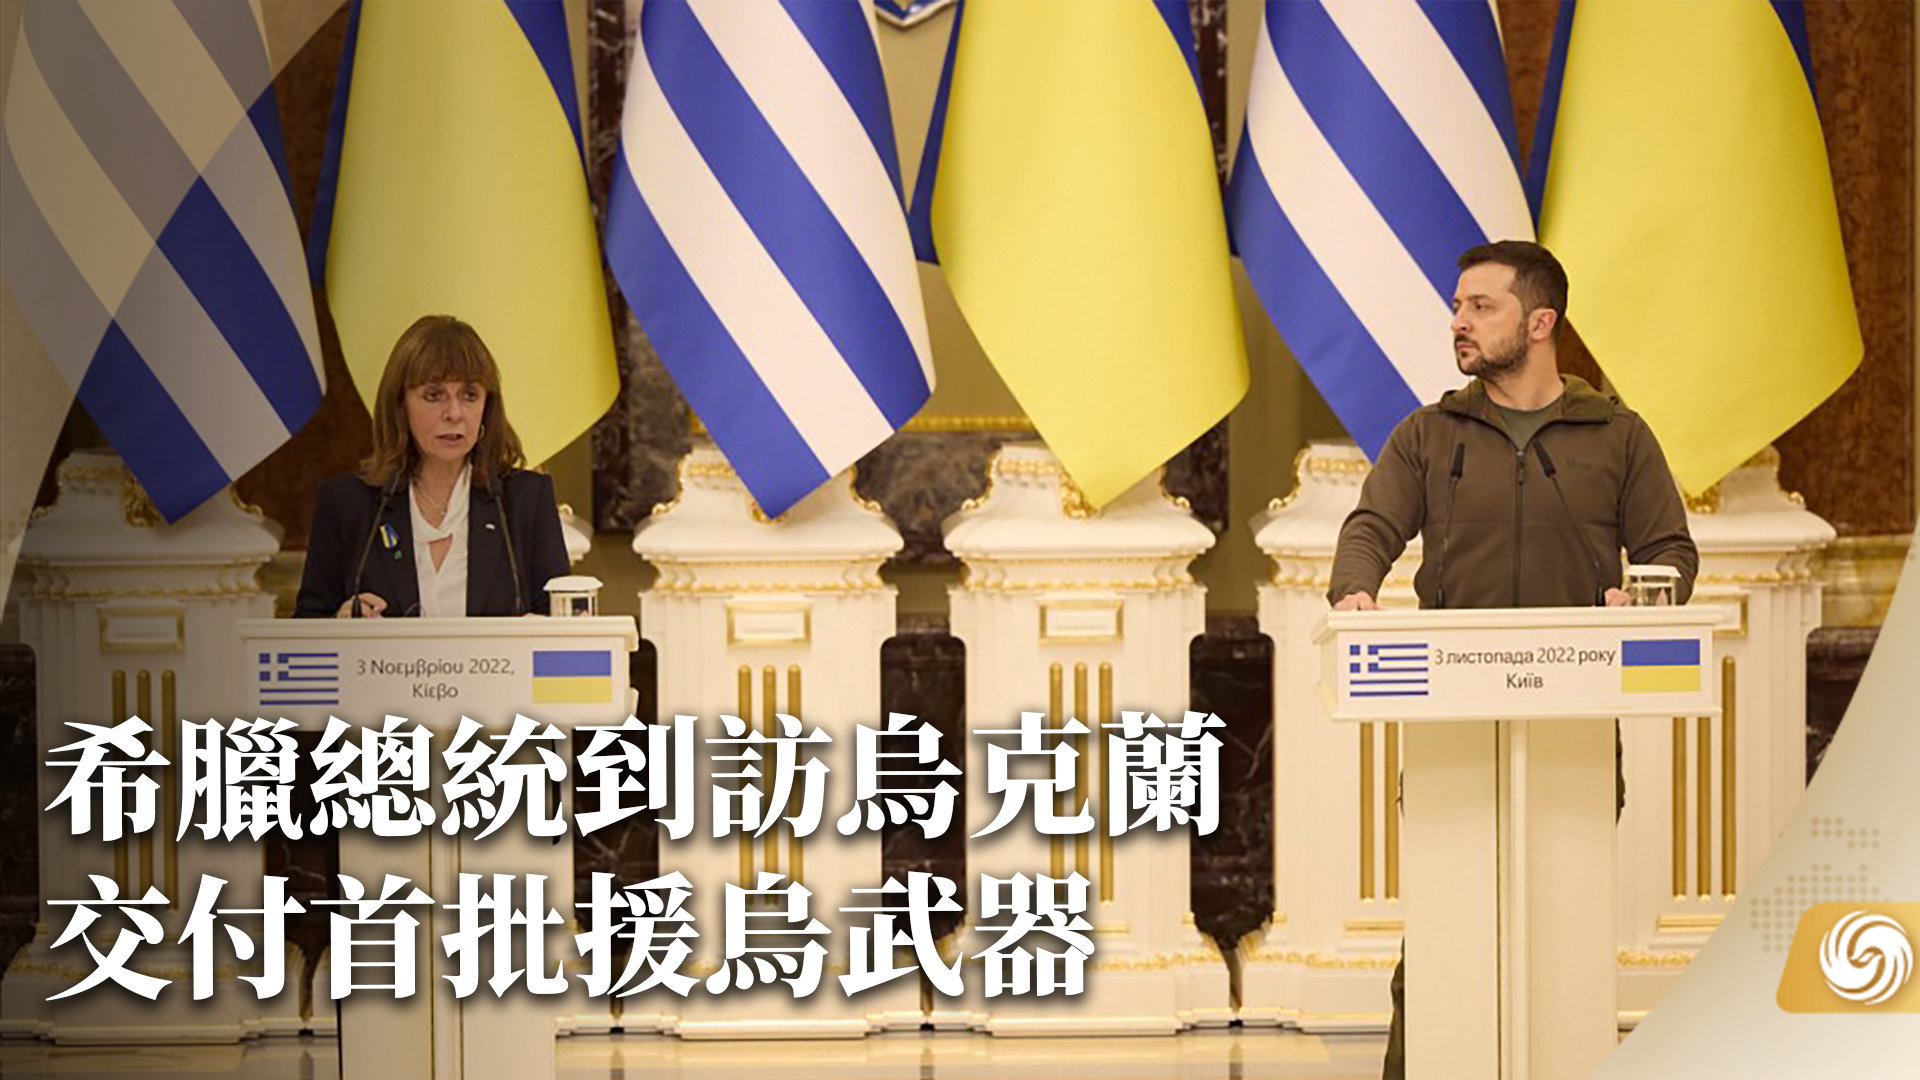 希腊总统到访乌克兰 交付首批援乌武器